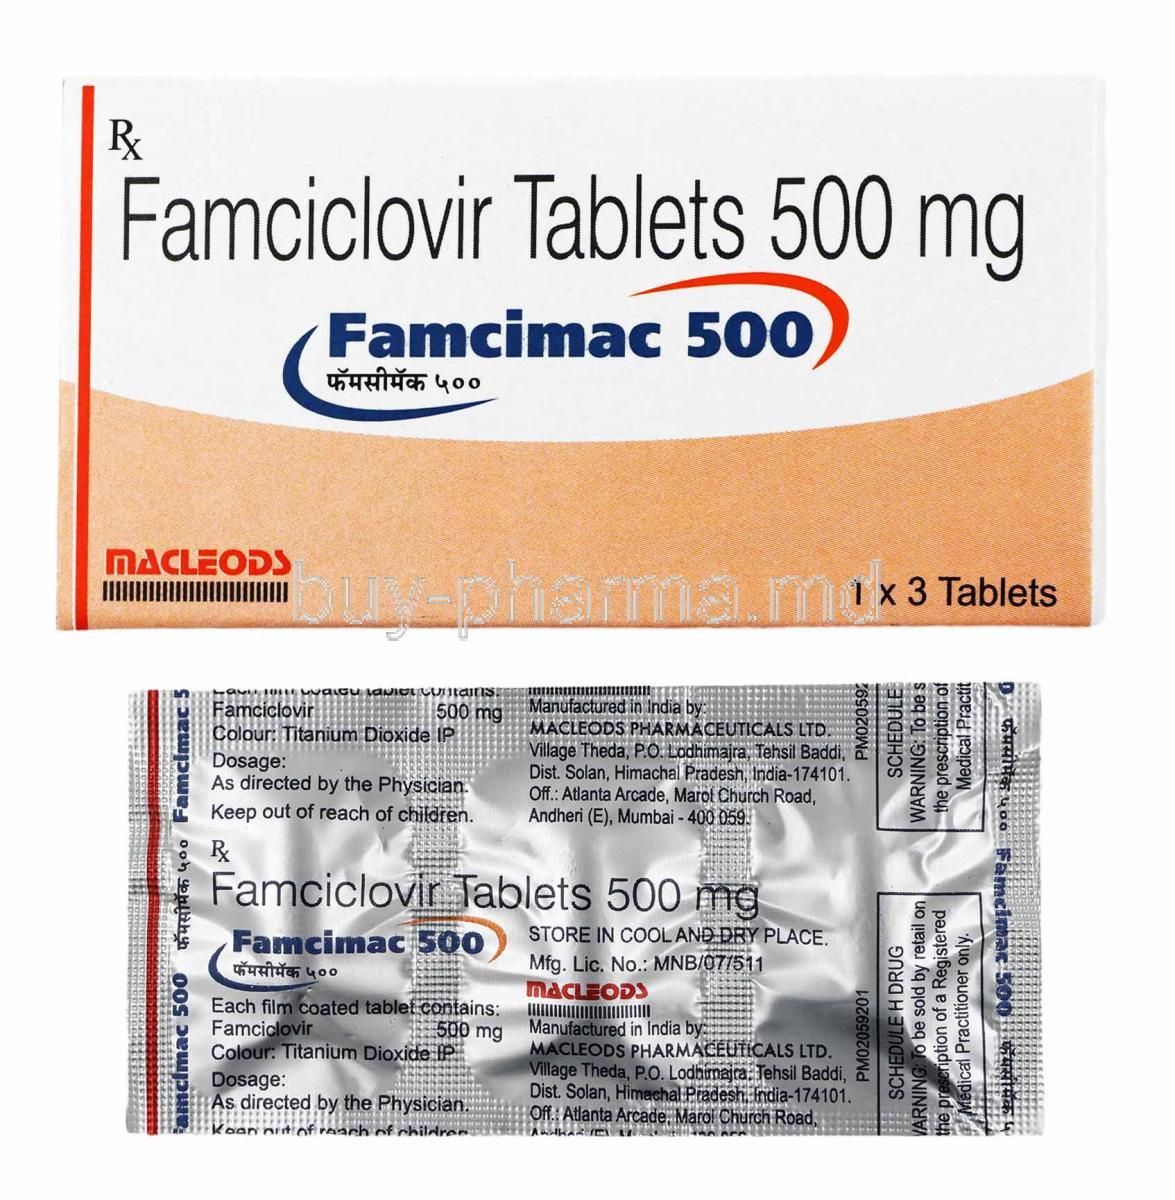 Famcimac, Famciclovir 500mg box and tablet